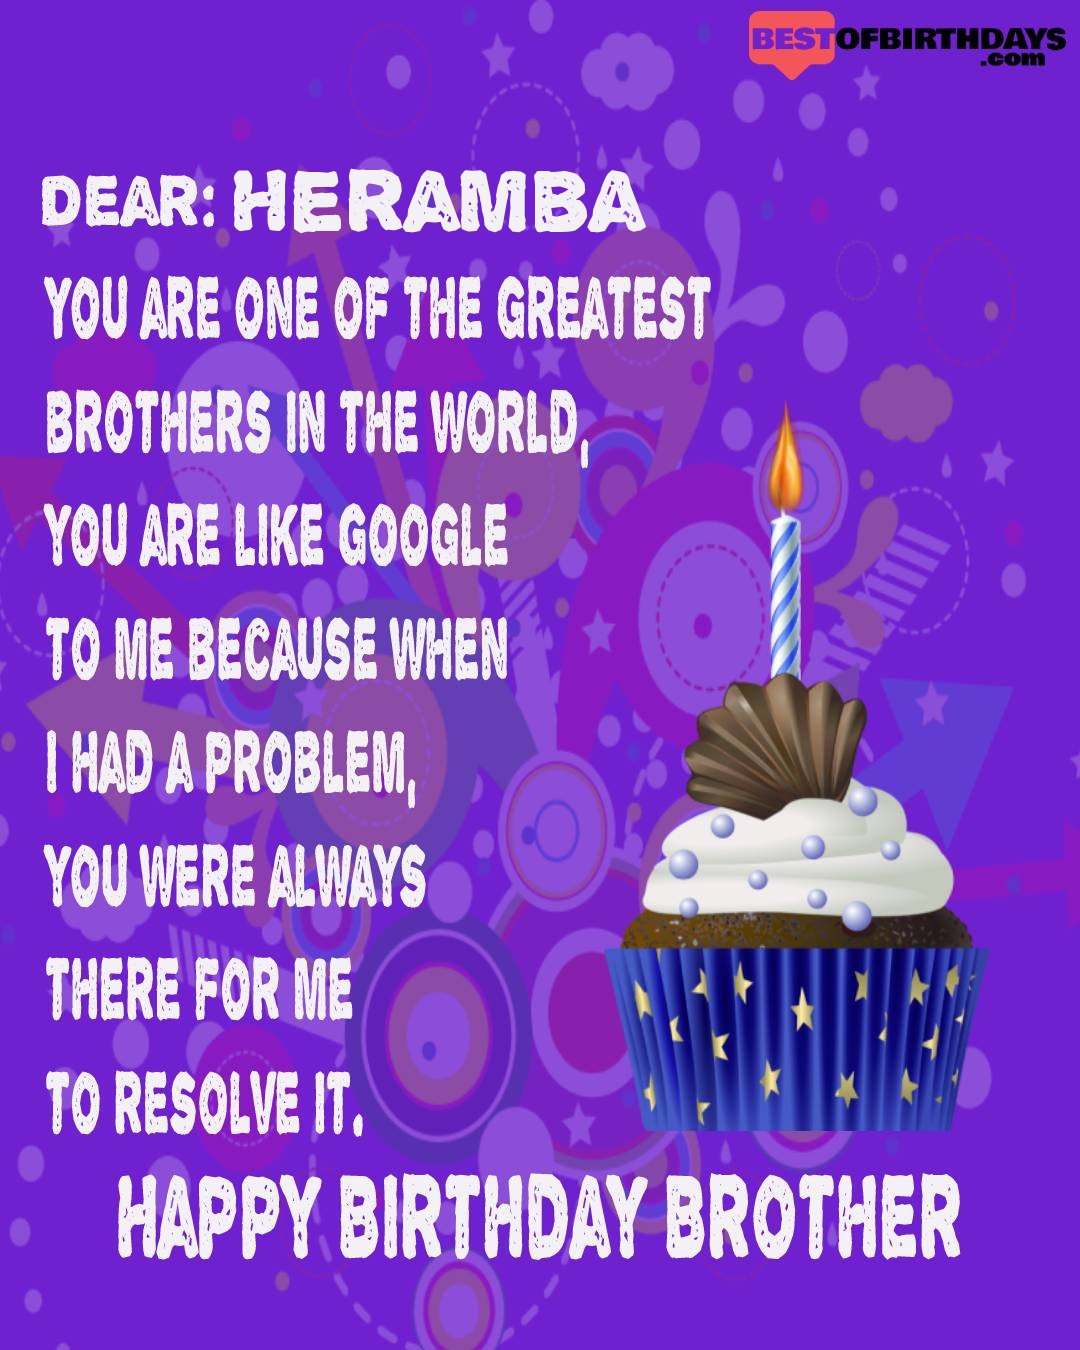 Happy birthday heramba bhai brother bro